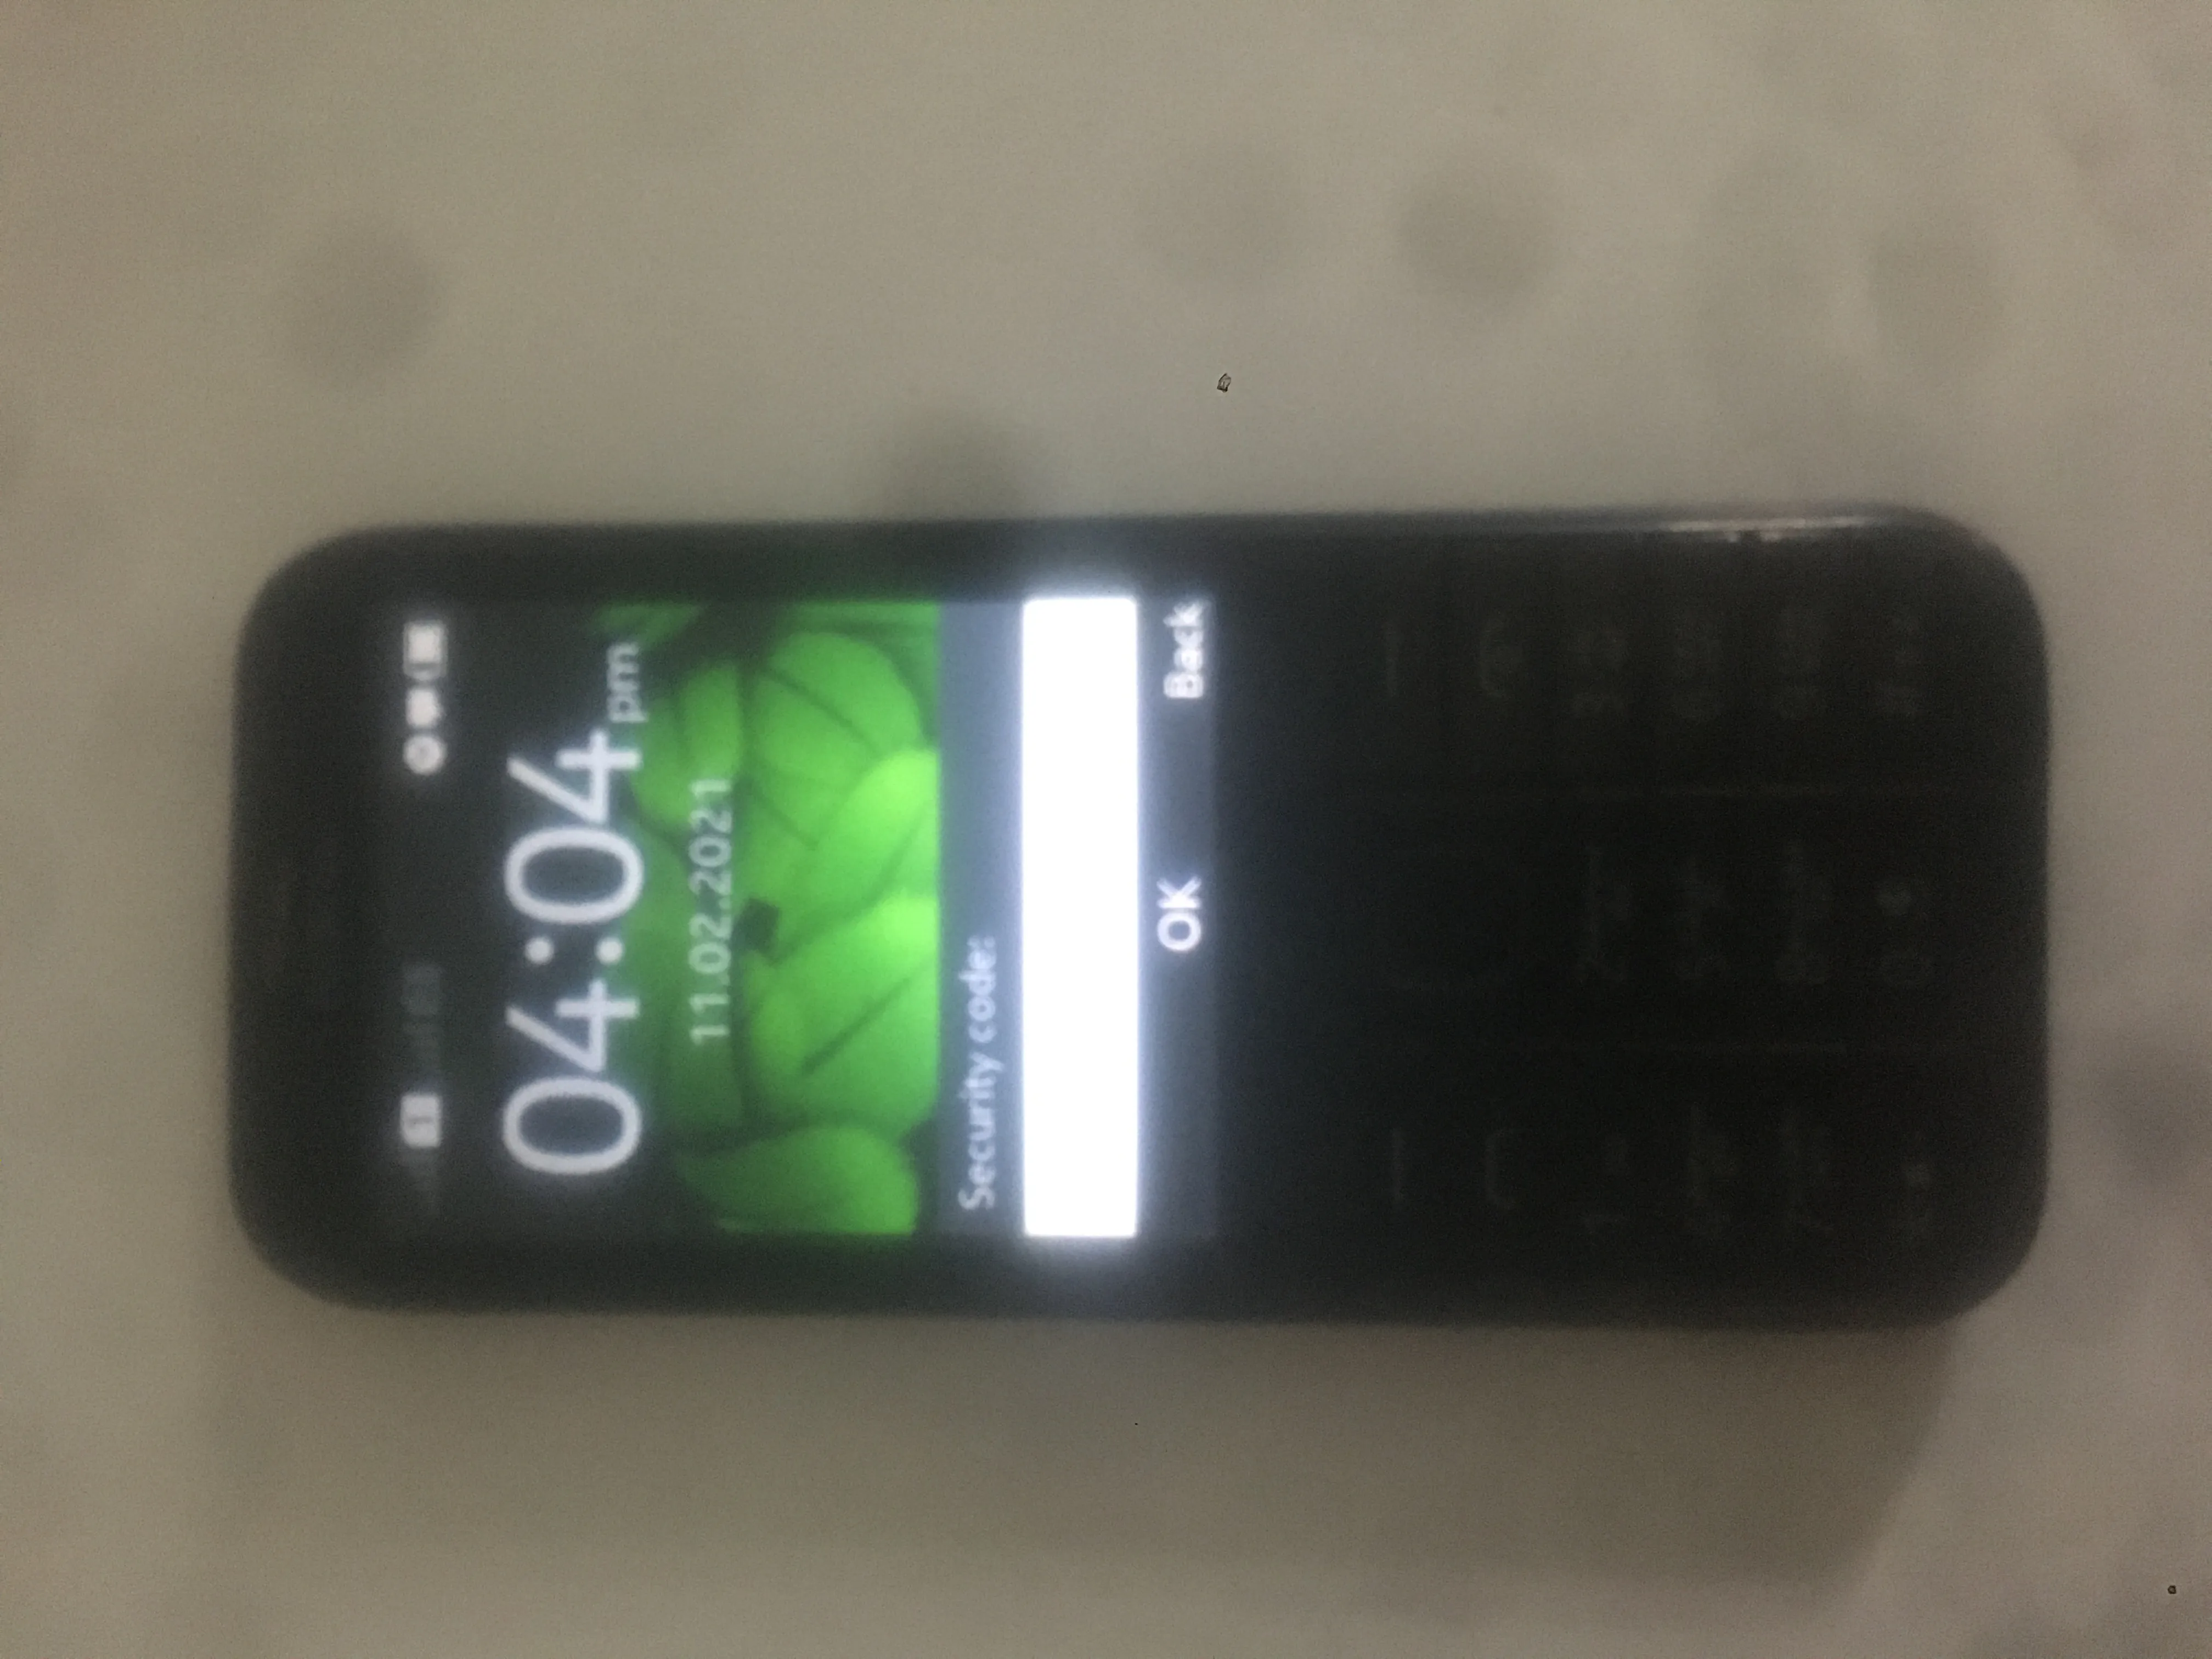 Nokia 225 dual sim - photo 1